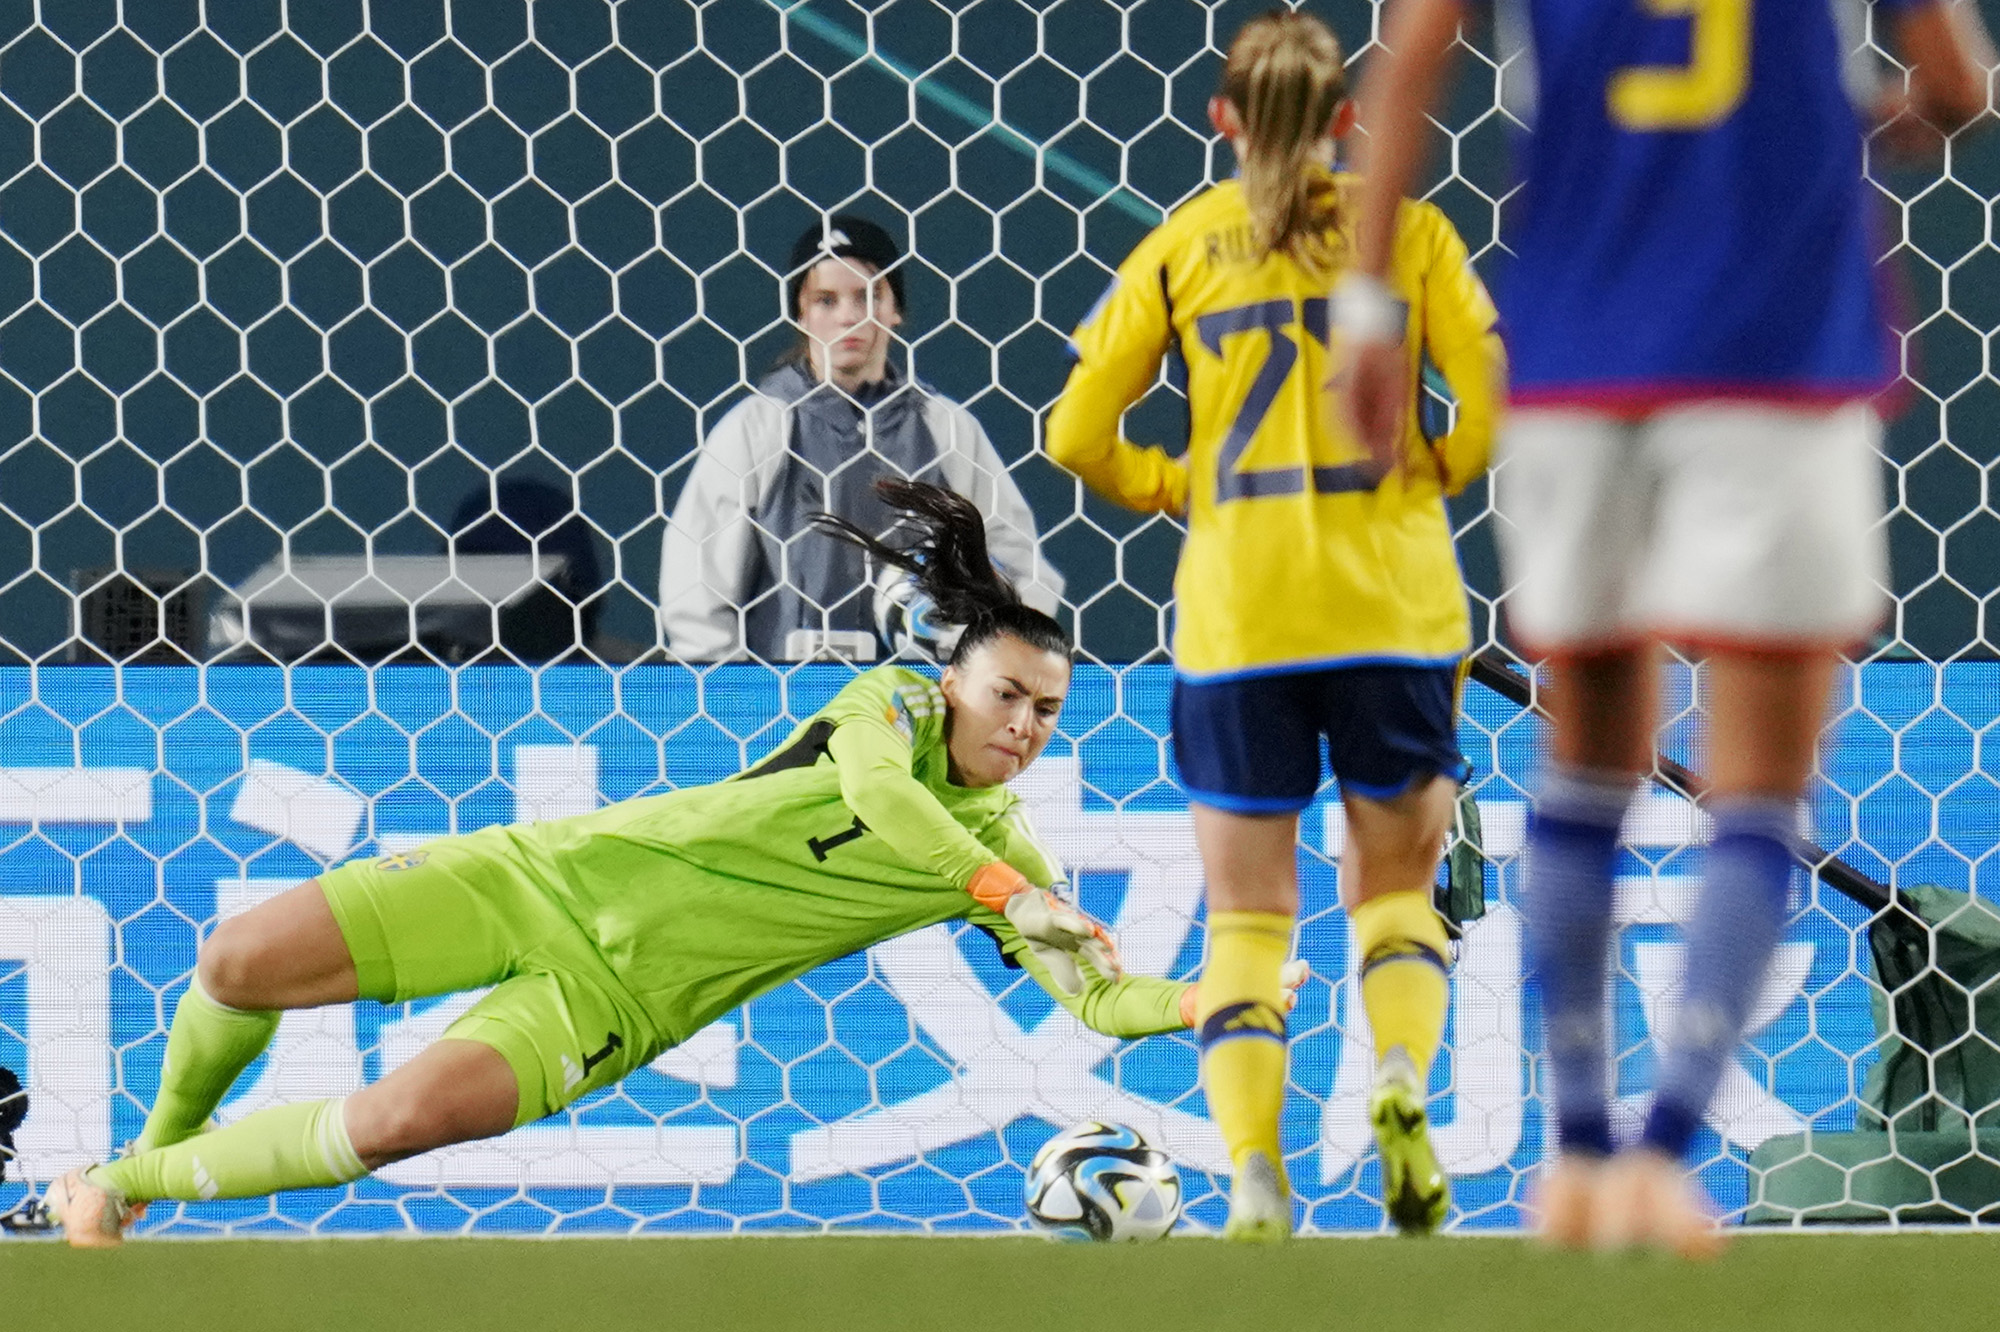 Sweden goalkeeper Zećira Mušović dives for a save during the Women's World Cup quarterfinal match against Japan at Eden Park in Auckland, New Zealand.